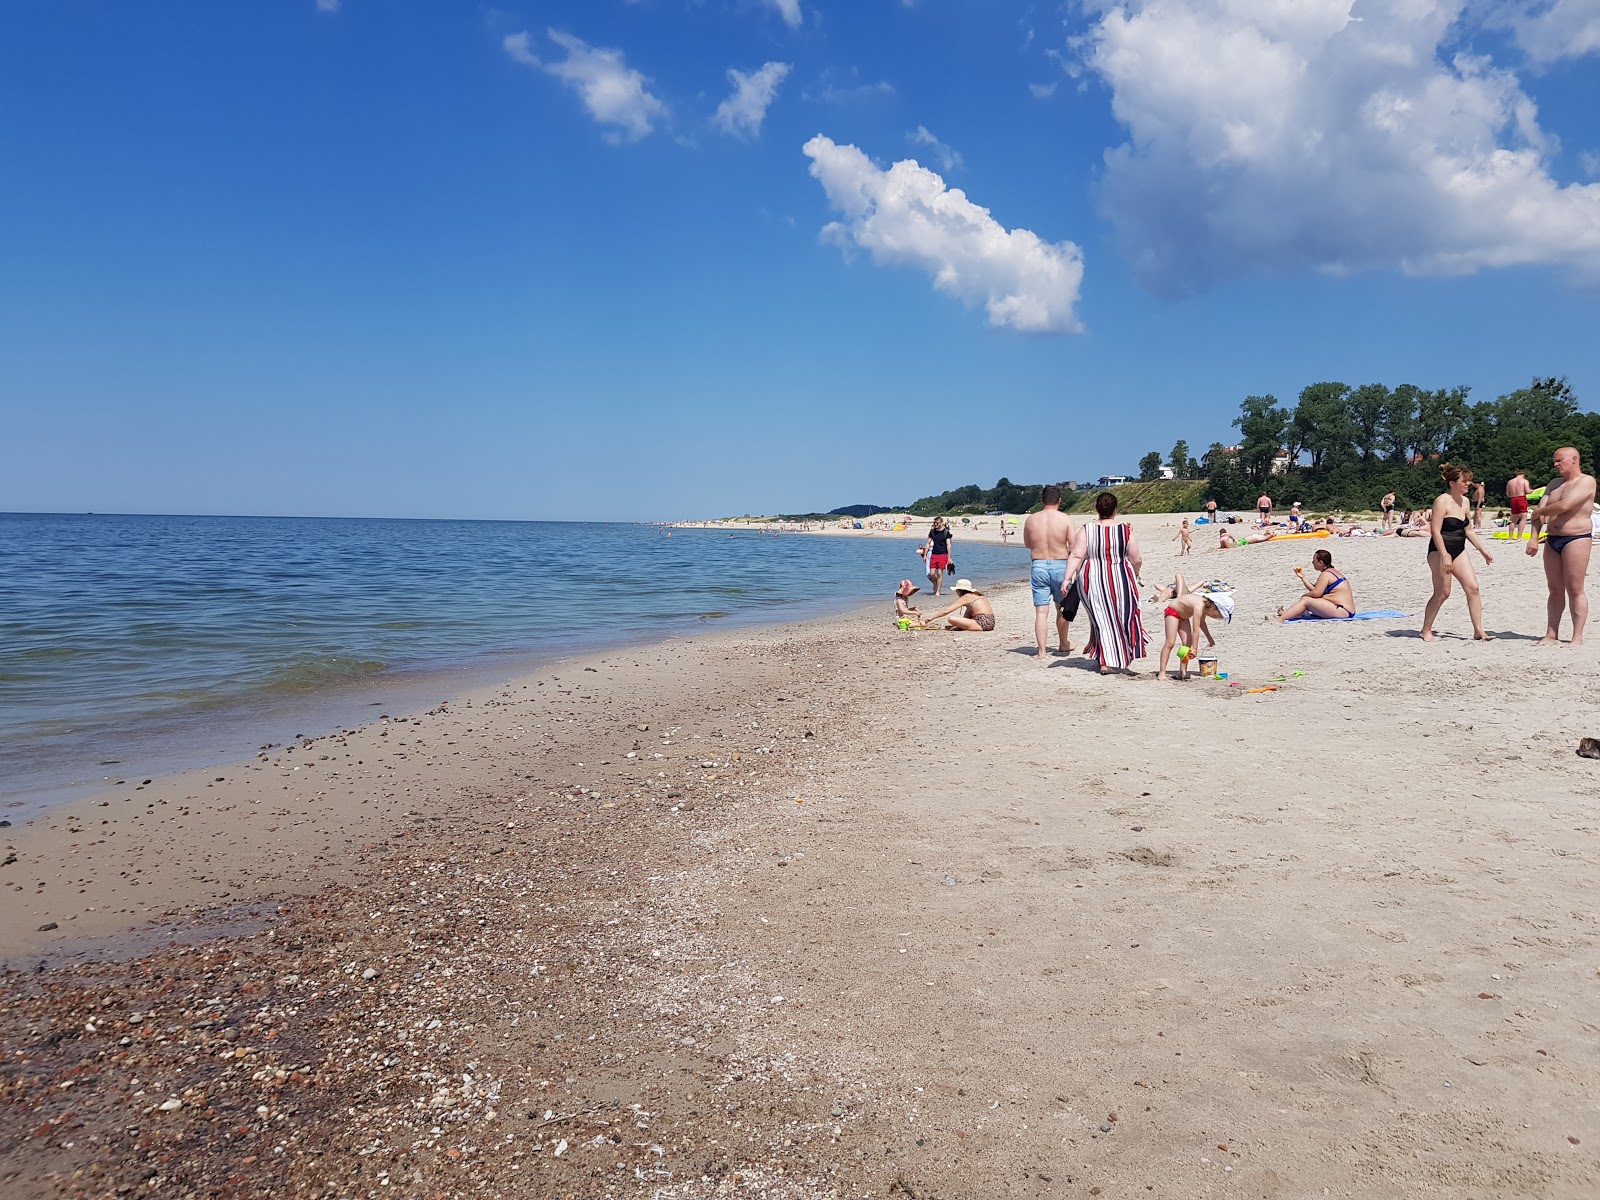 Yantarnyy Plaj'in fotoğrafı parlak kum yüzey ile